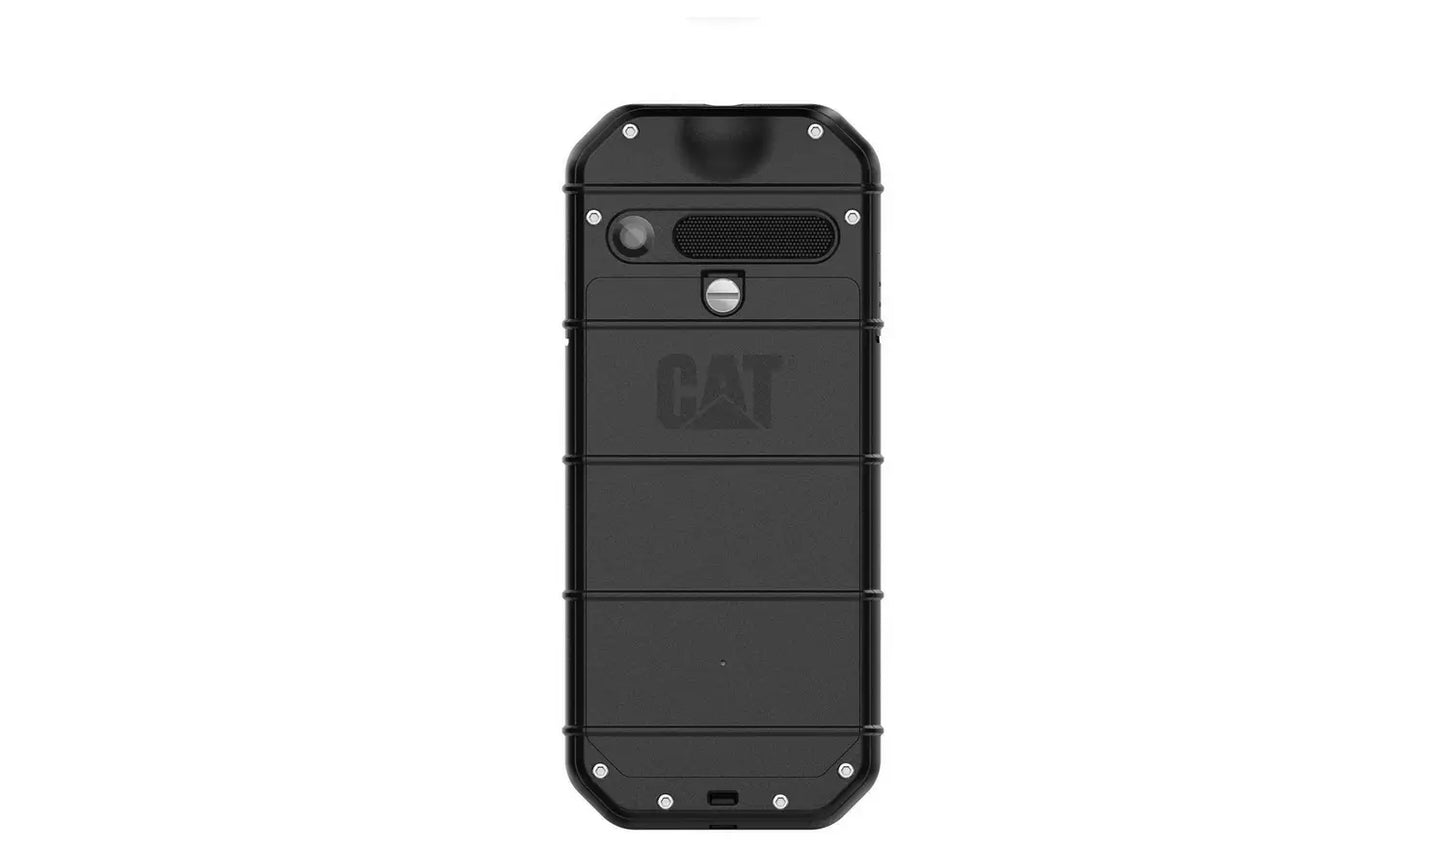 Cat B26 Mobile Phone Black